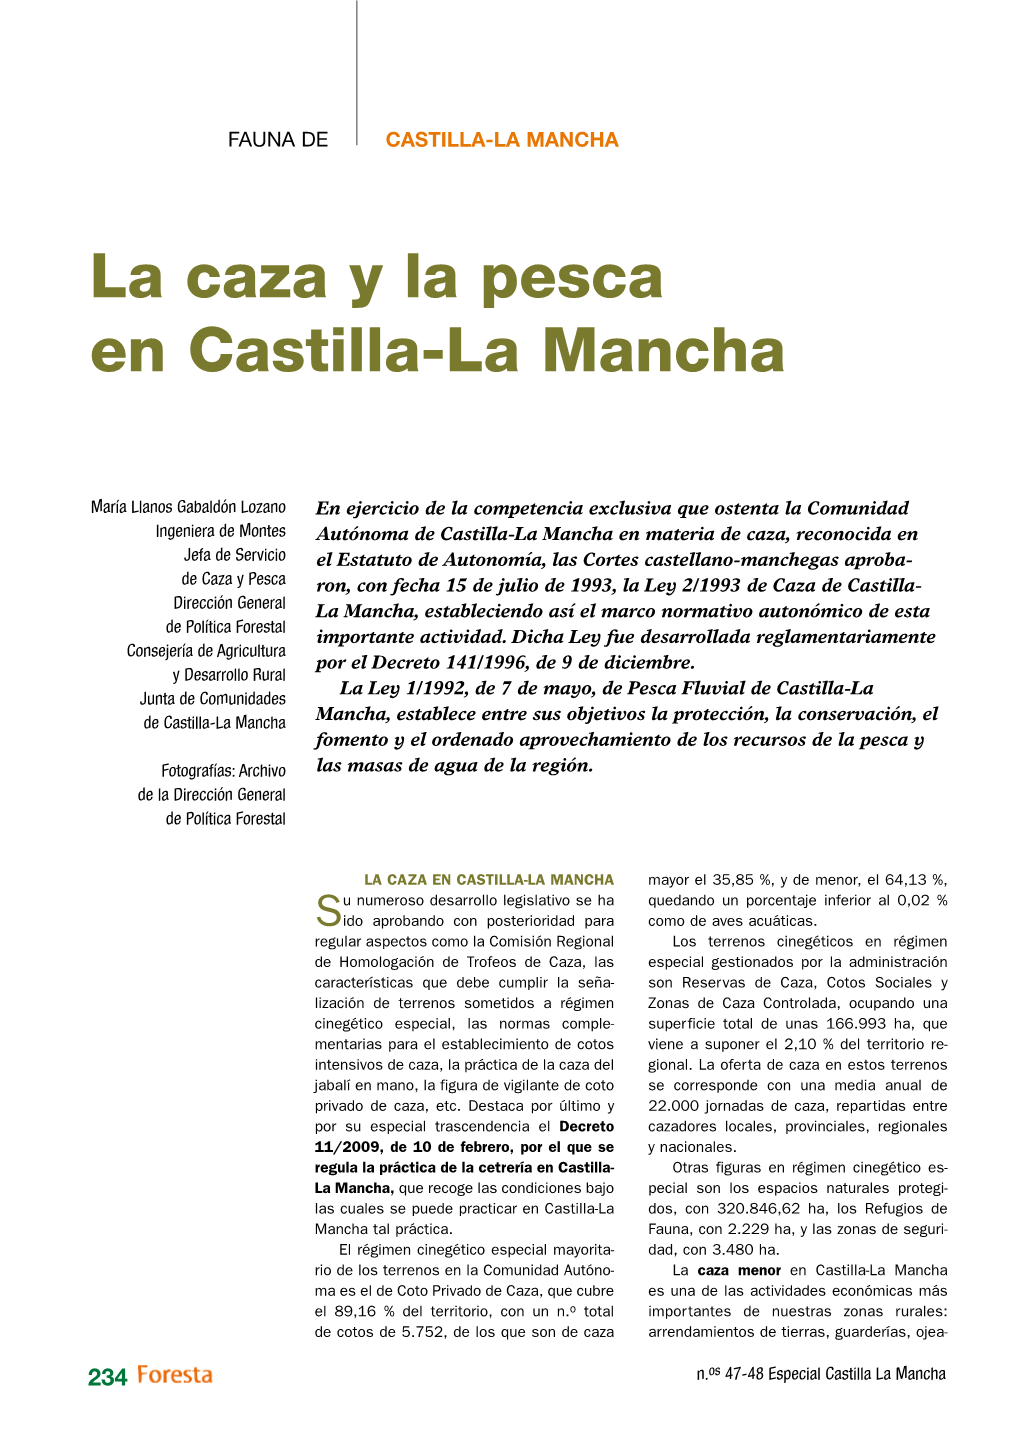 La Caza Y La Pesca En Castilla-La Mancha